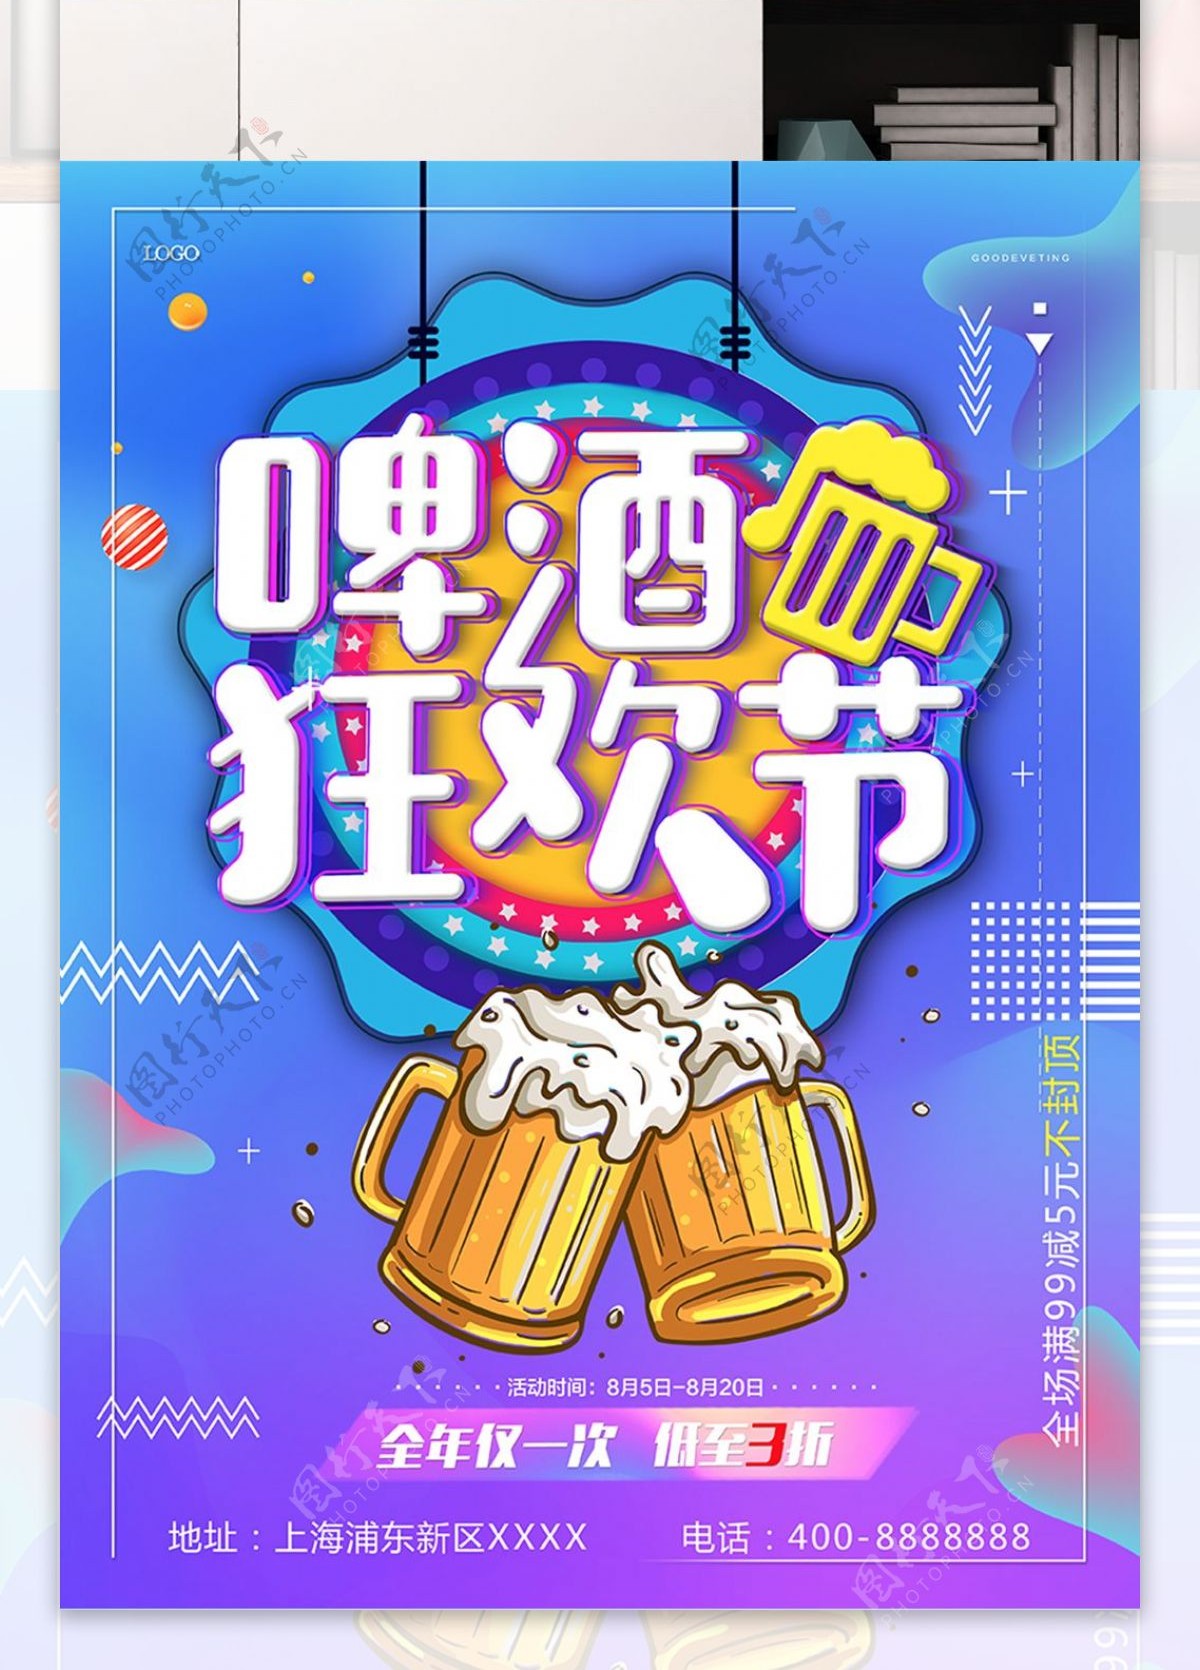 原创炫酷渐变啤酒节海报